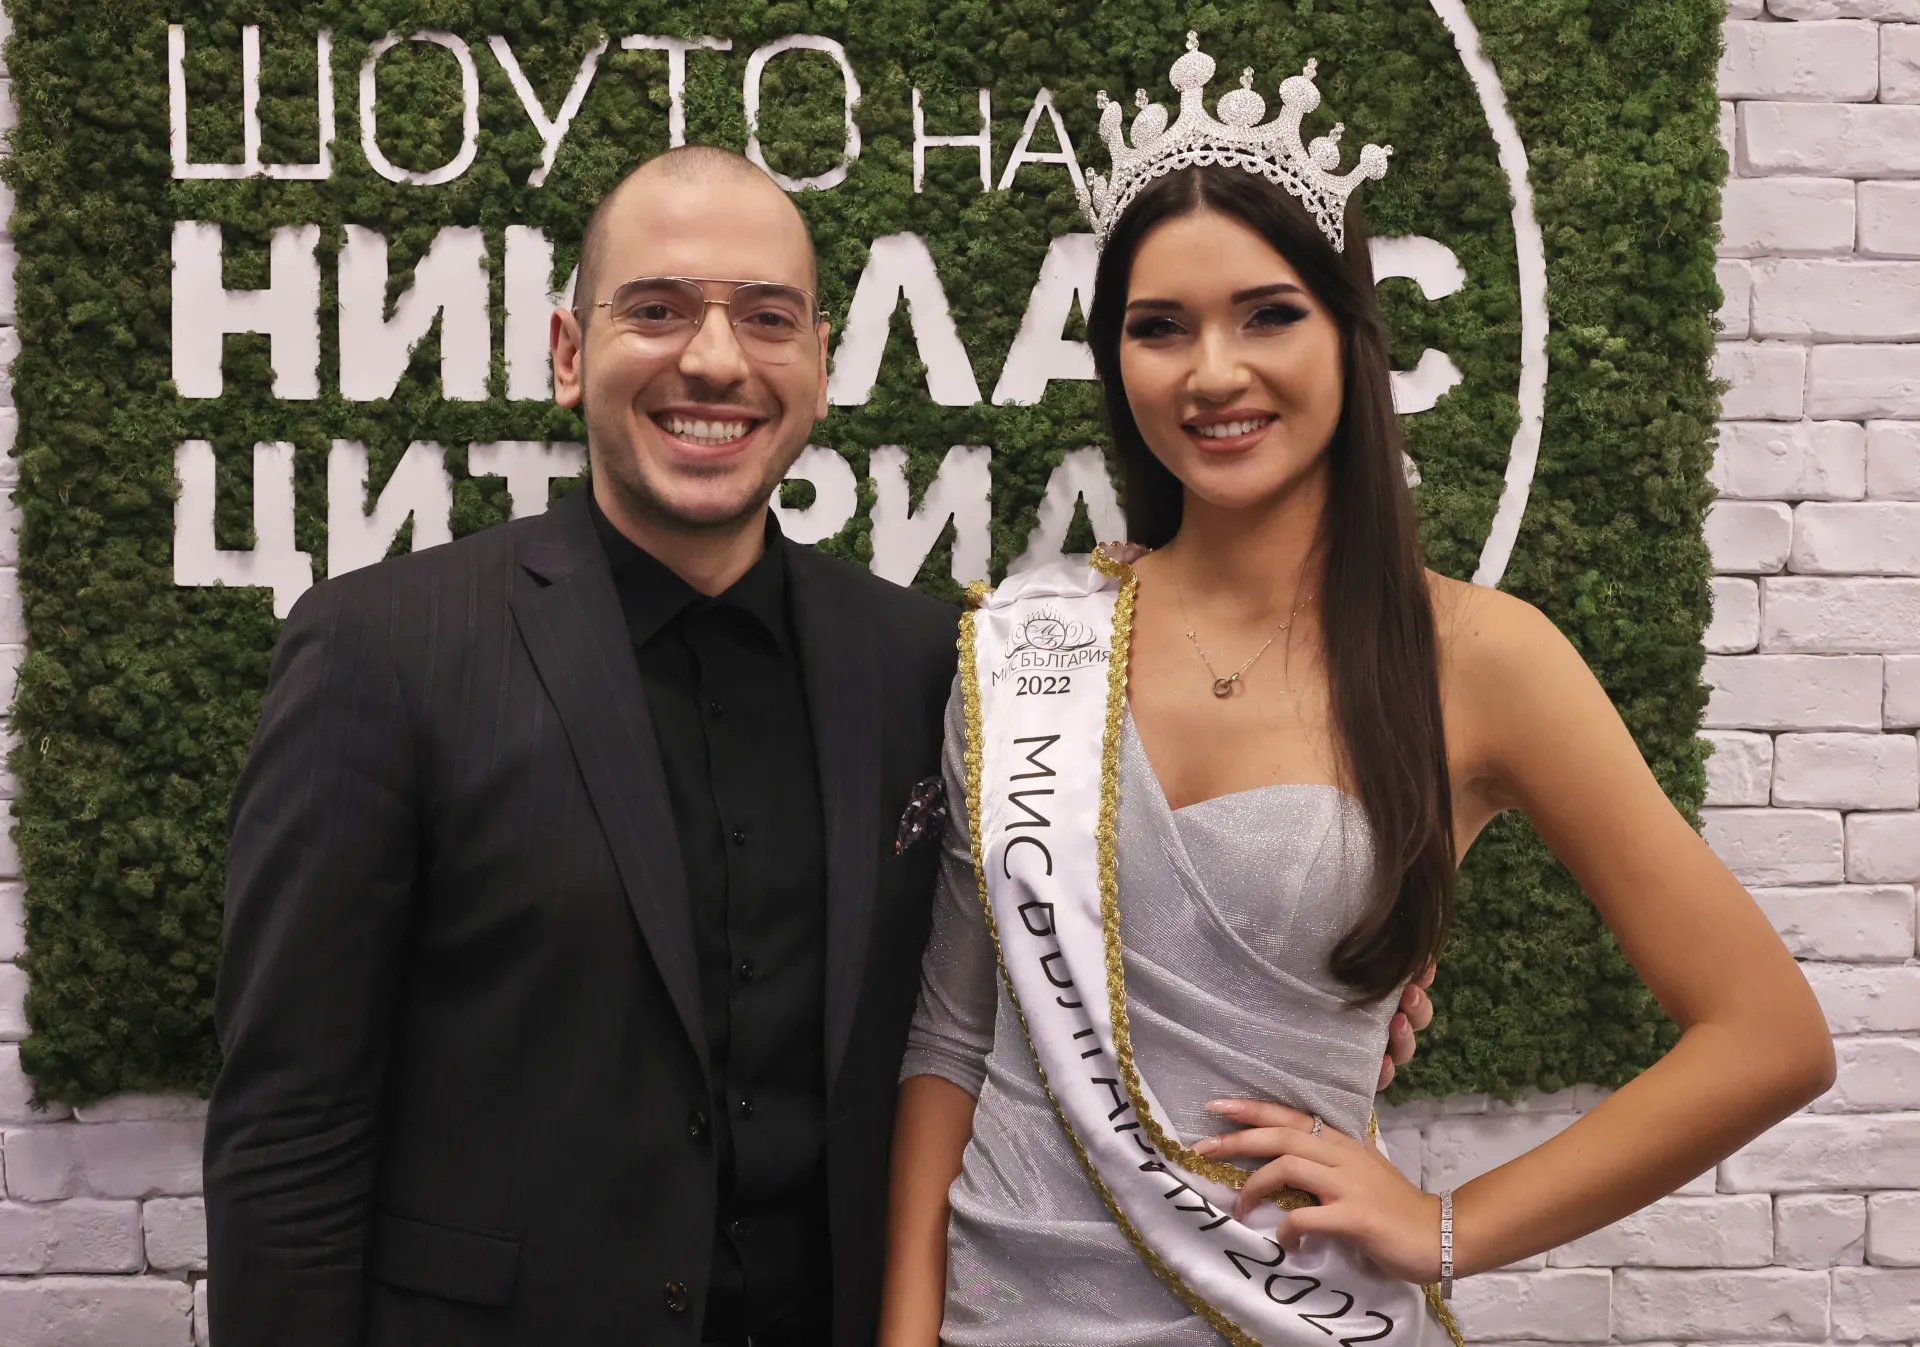 Победителките в „Мисис България 2022“ за своите каузи и подкрепят ли съпрузите им участието в конкурса